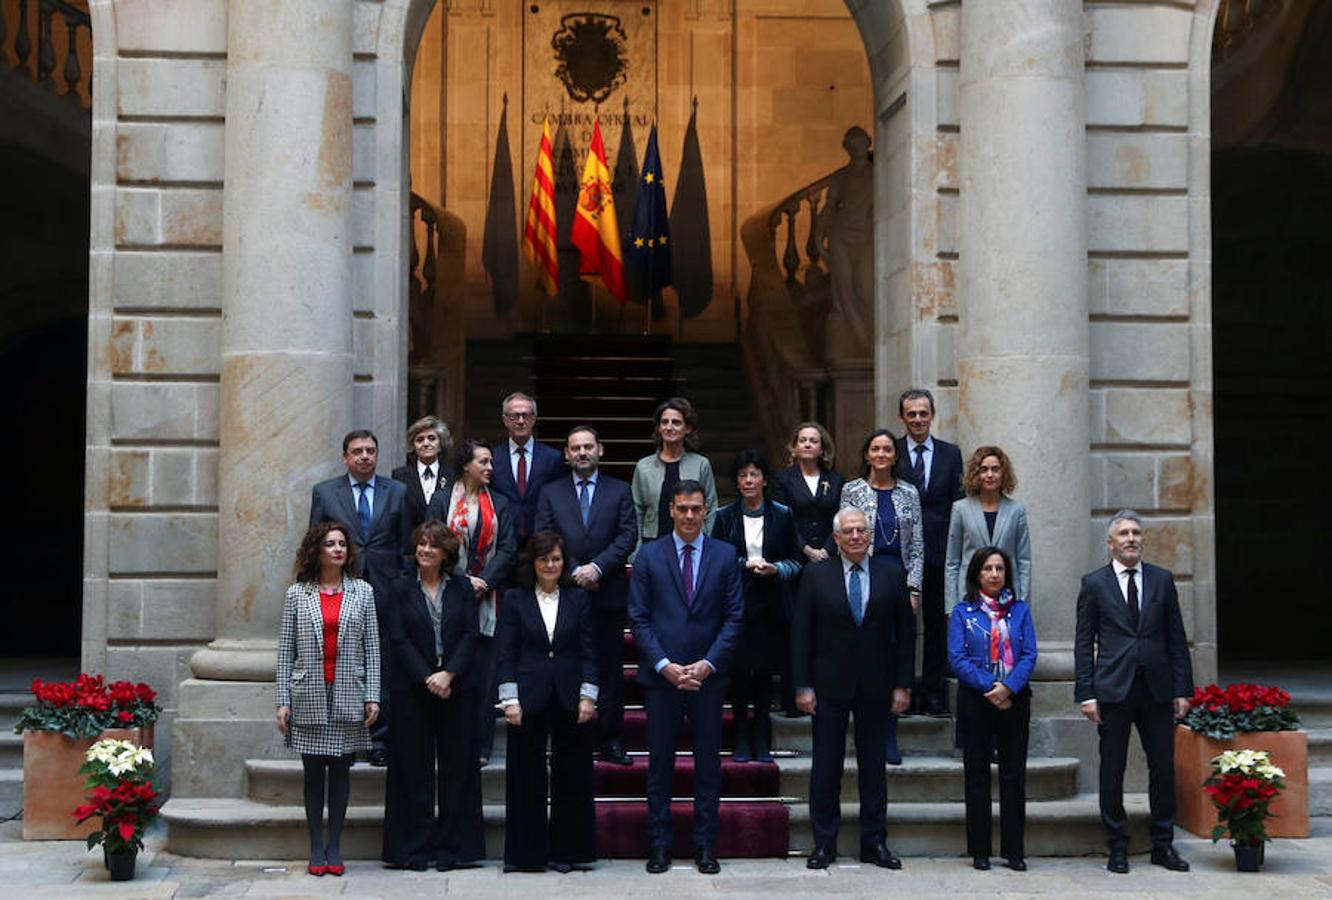 El presidente del Gobierno, Pedro Sánchez, preside este viernes el Consejo de Ministros en la Llotja de Mar de Barcelona. La ciudad condal vive una jornada de concentraciones y protestas de la mano de los CDR.